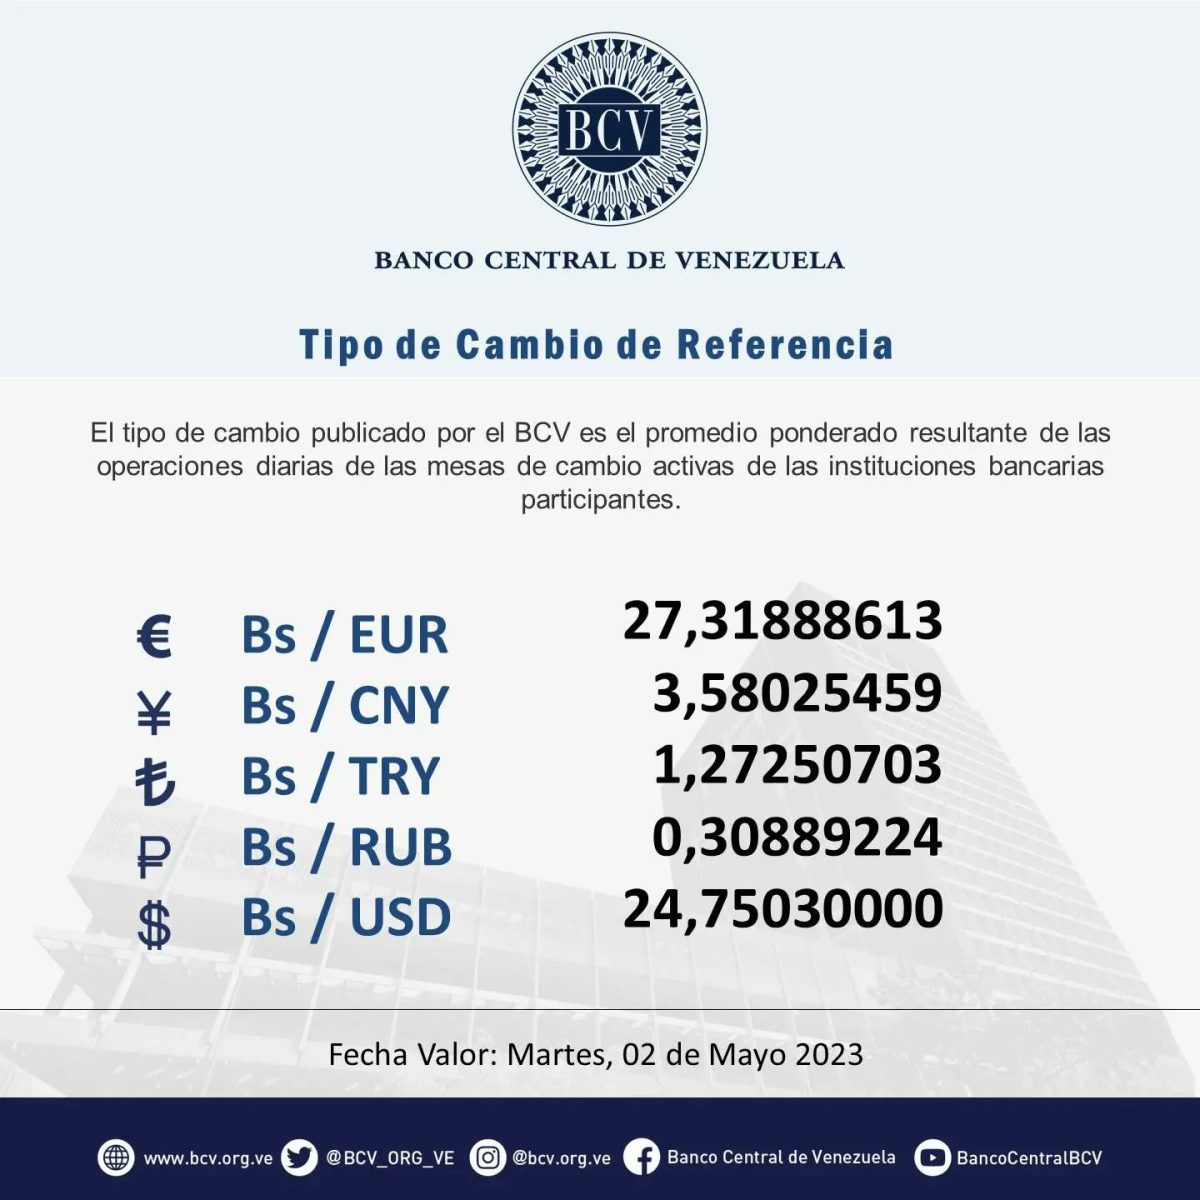 dolartoday en venezuela precio del dolar este sabado 29 de abril de 2023 laverdaddemonagas.com bcv898